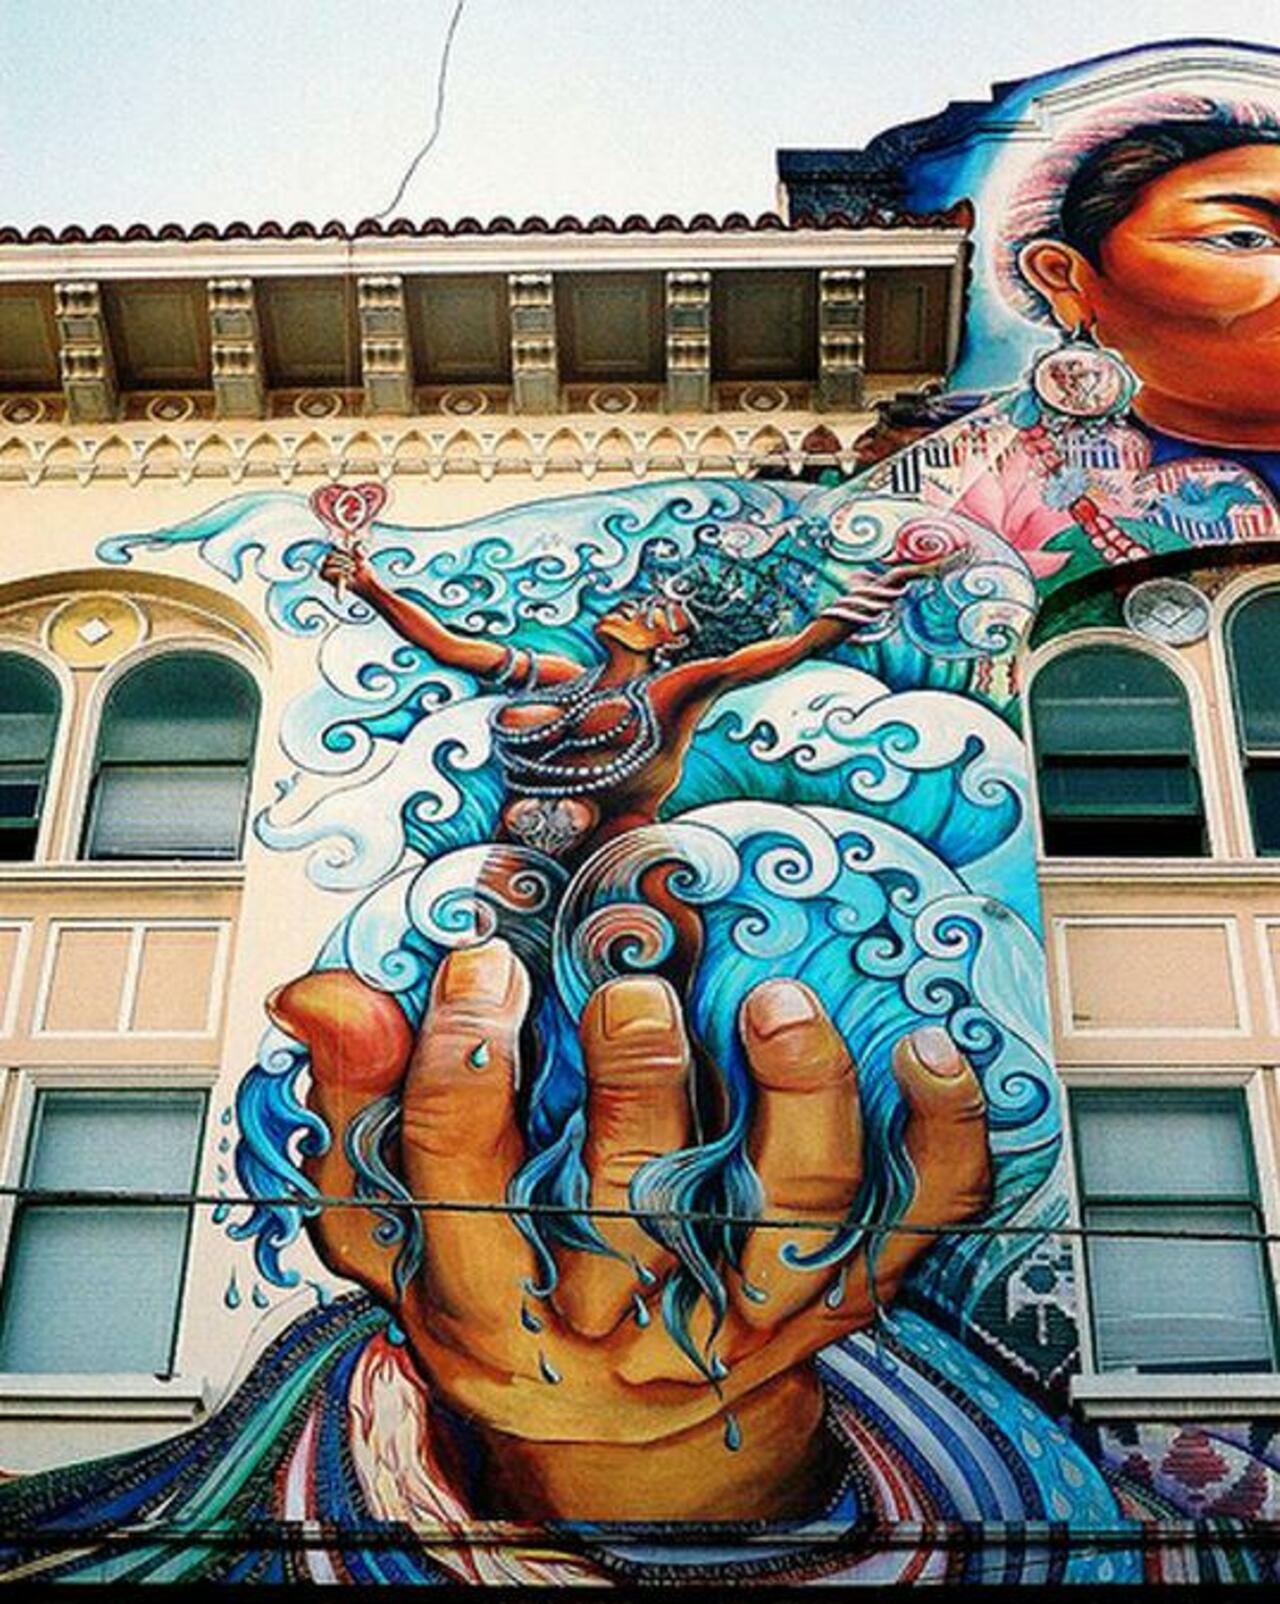 RT @5putnik1: Sea Goddess  • #streetart #graffiti #art #funky #dope . : https://t.co/X18piTvOeg